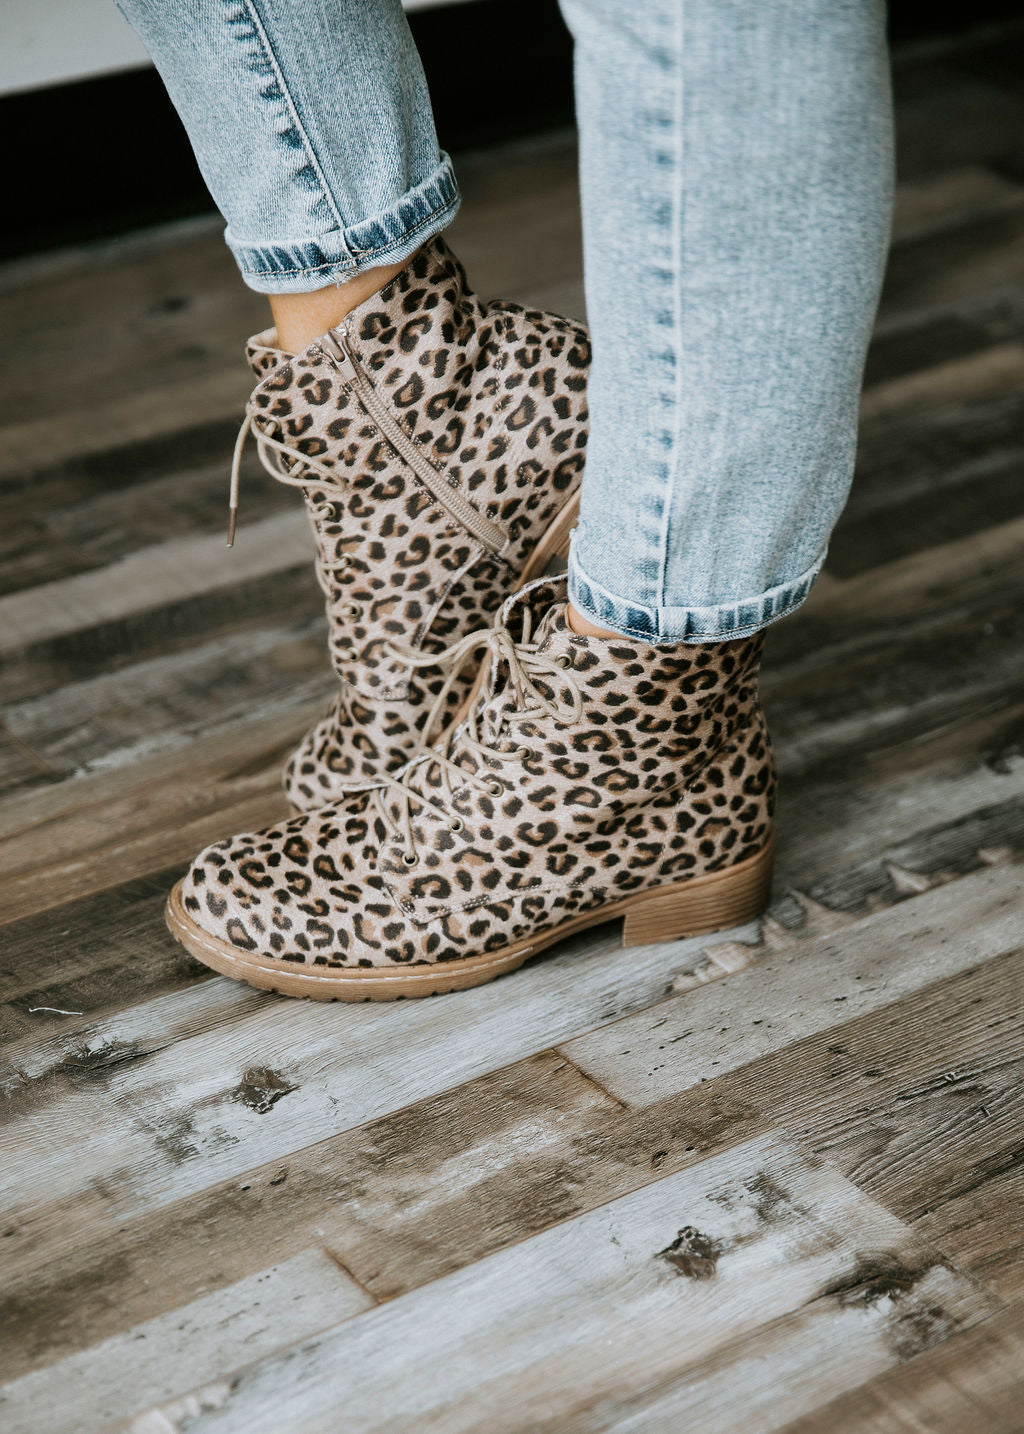 leopard lace up boots